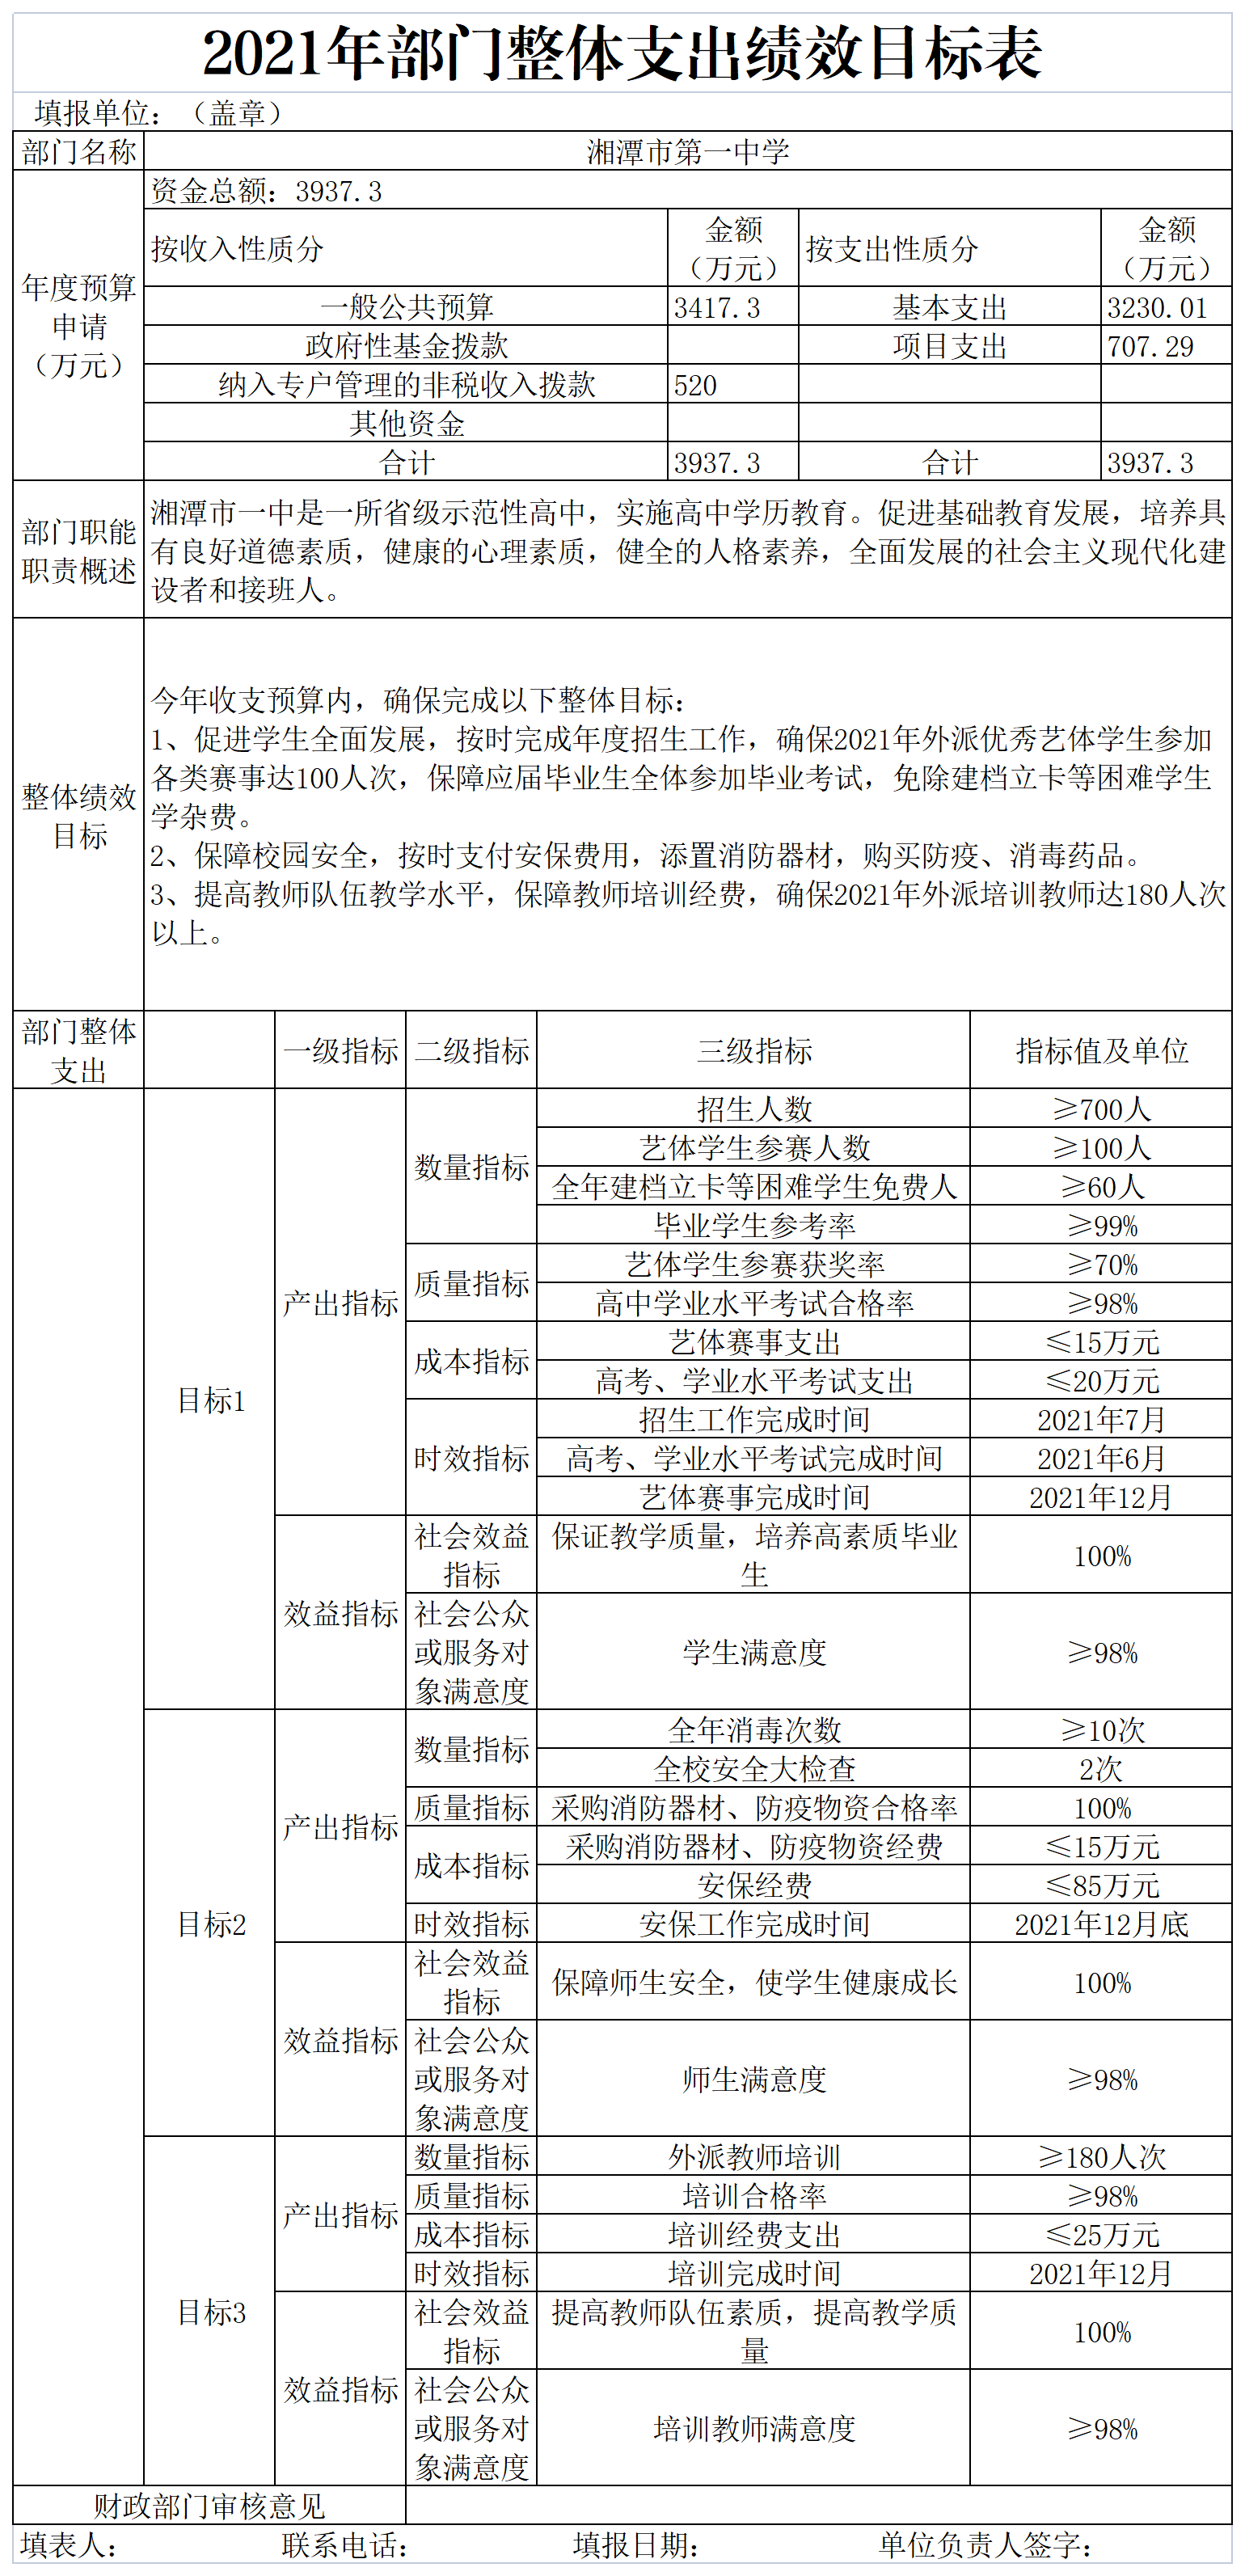 湘潭市第一中学2021年部门整体支出绩效目标申报表